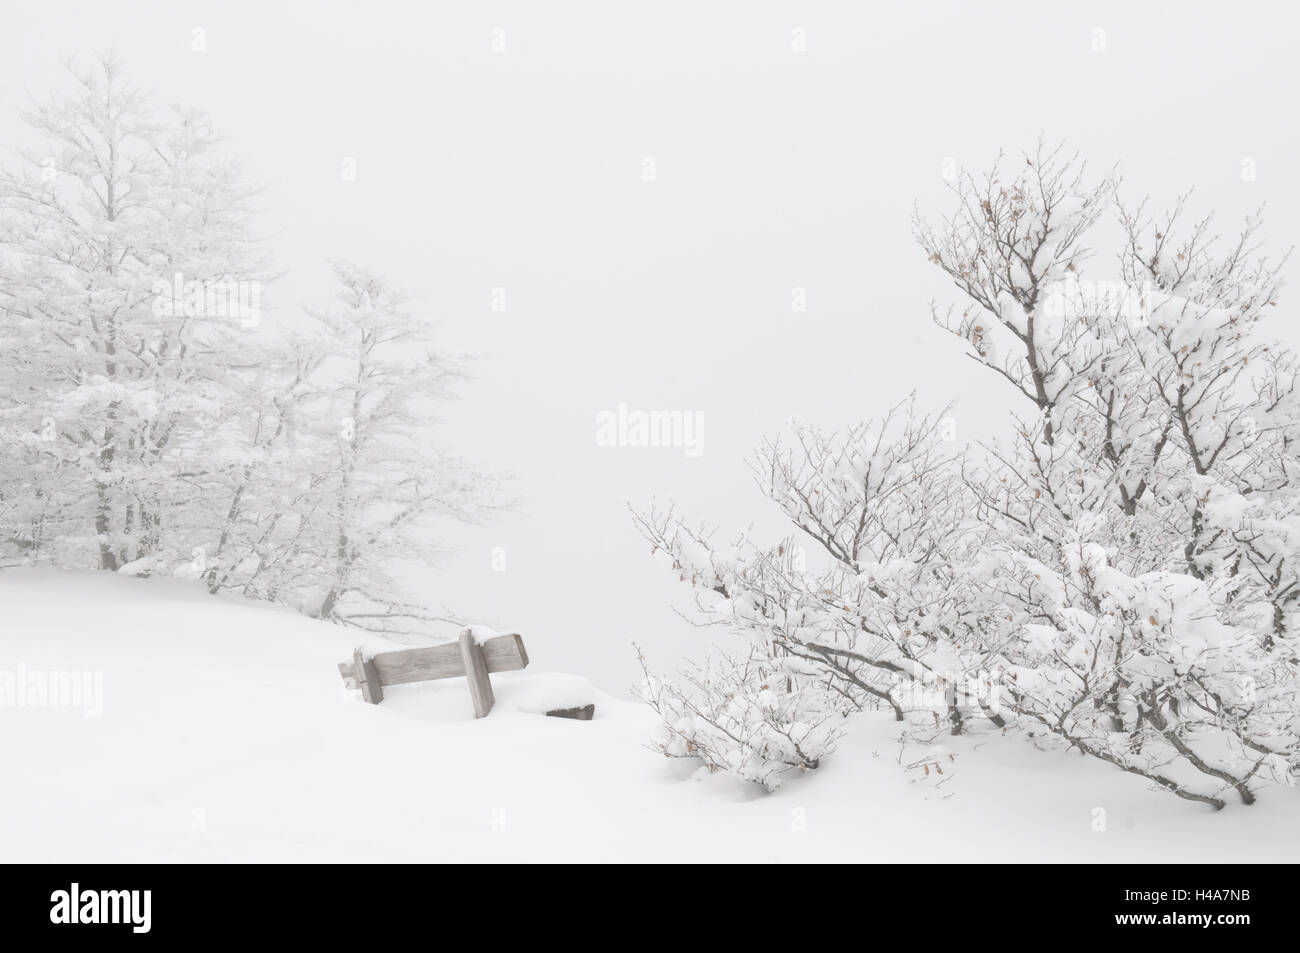 Germania, Baden-Württemberg, Foresta Nera, Schauinsland, snowbound sella e alberi, Foto Stock